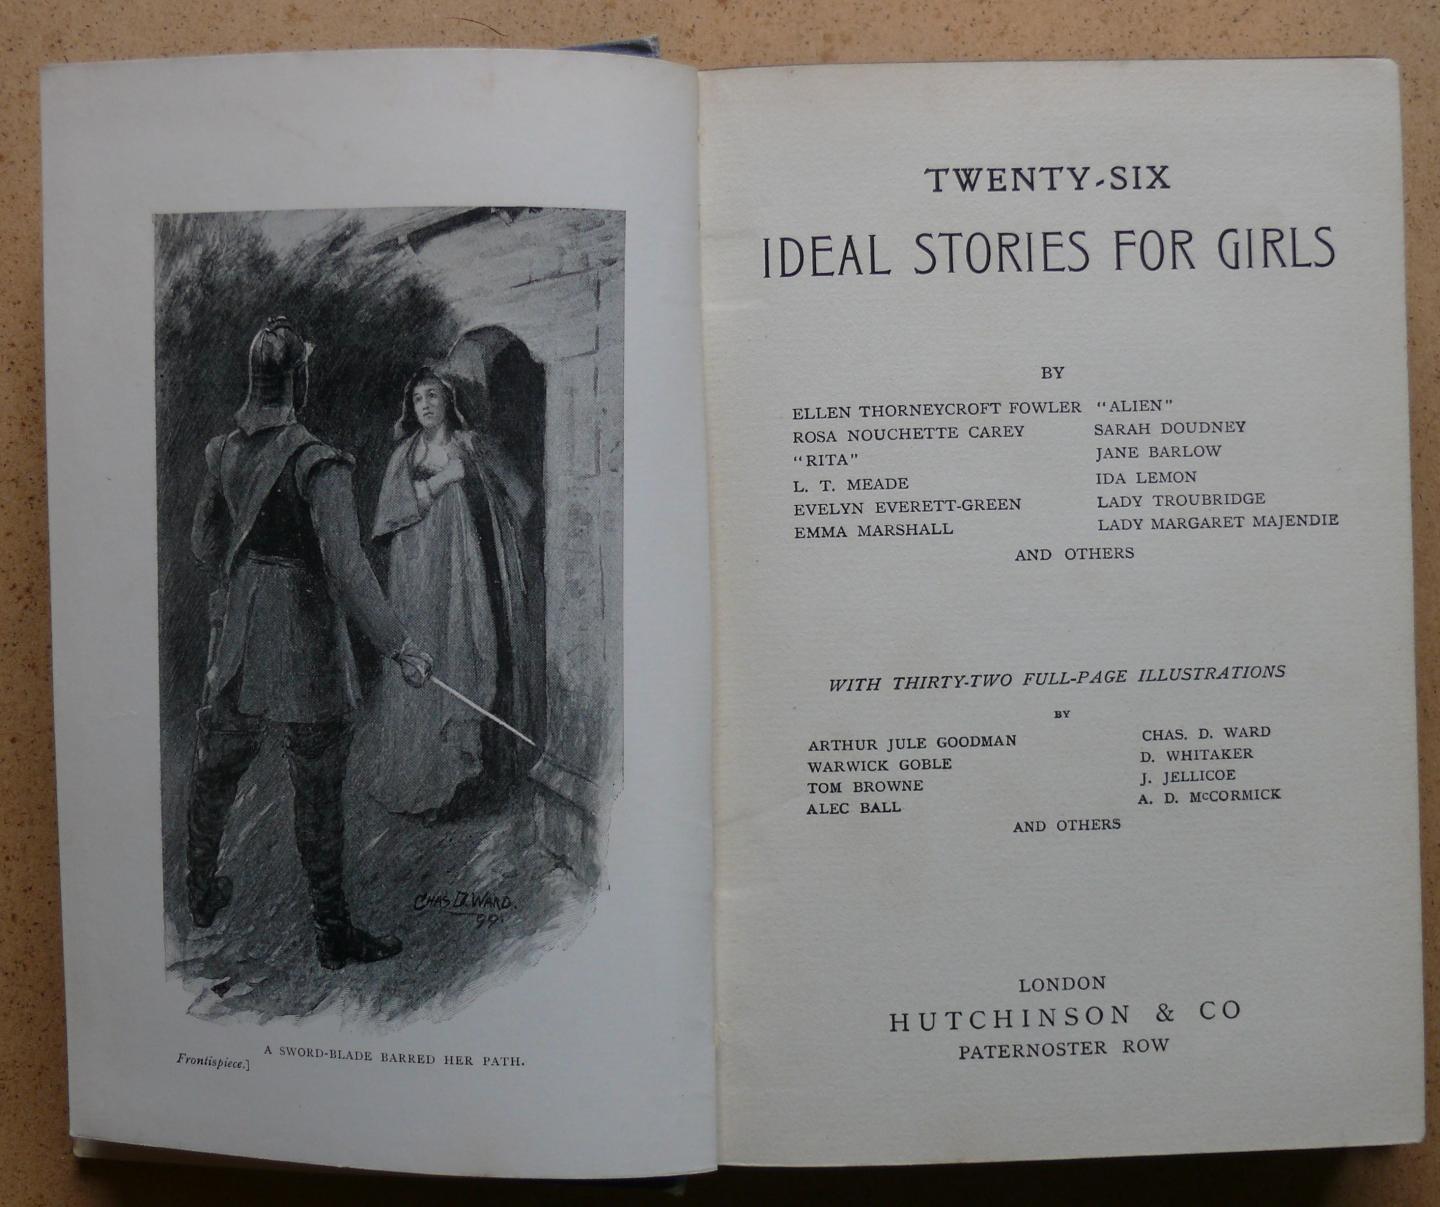 Thorneycroft Fowler, Ellen - Nouchette Carey, Rosa  e.a. - 26 Ideal stories for girls.